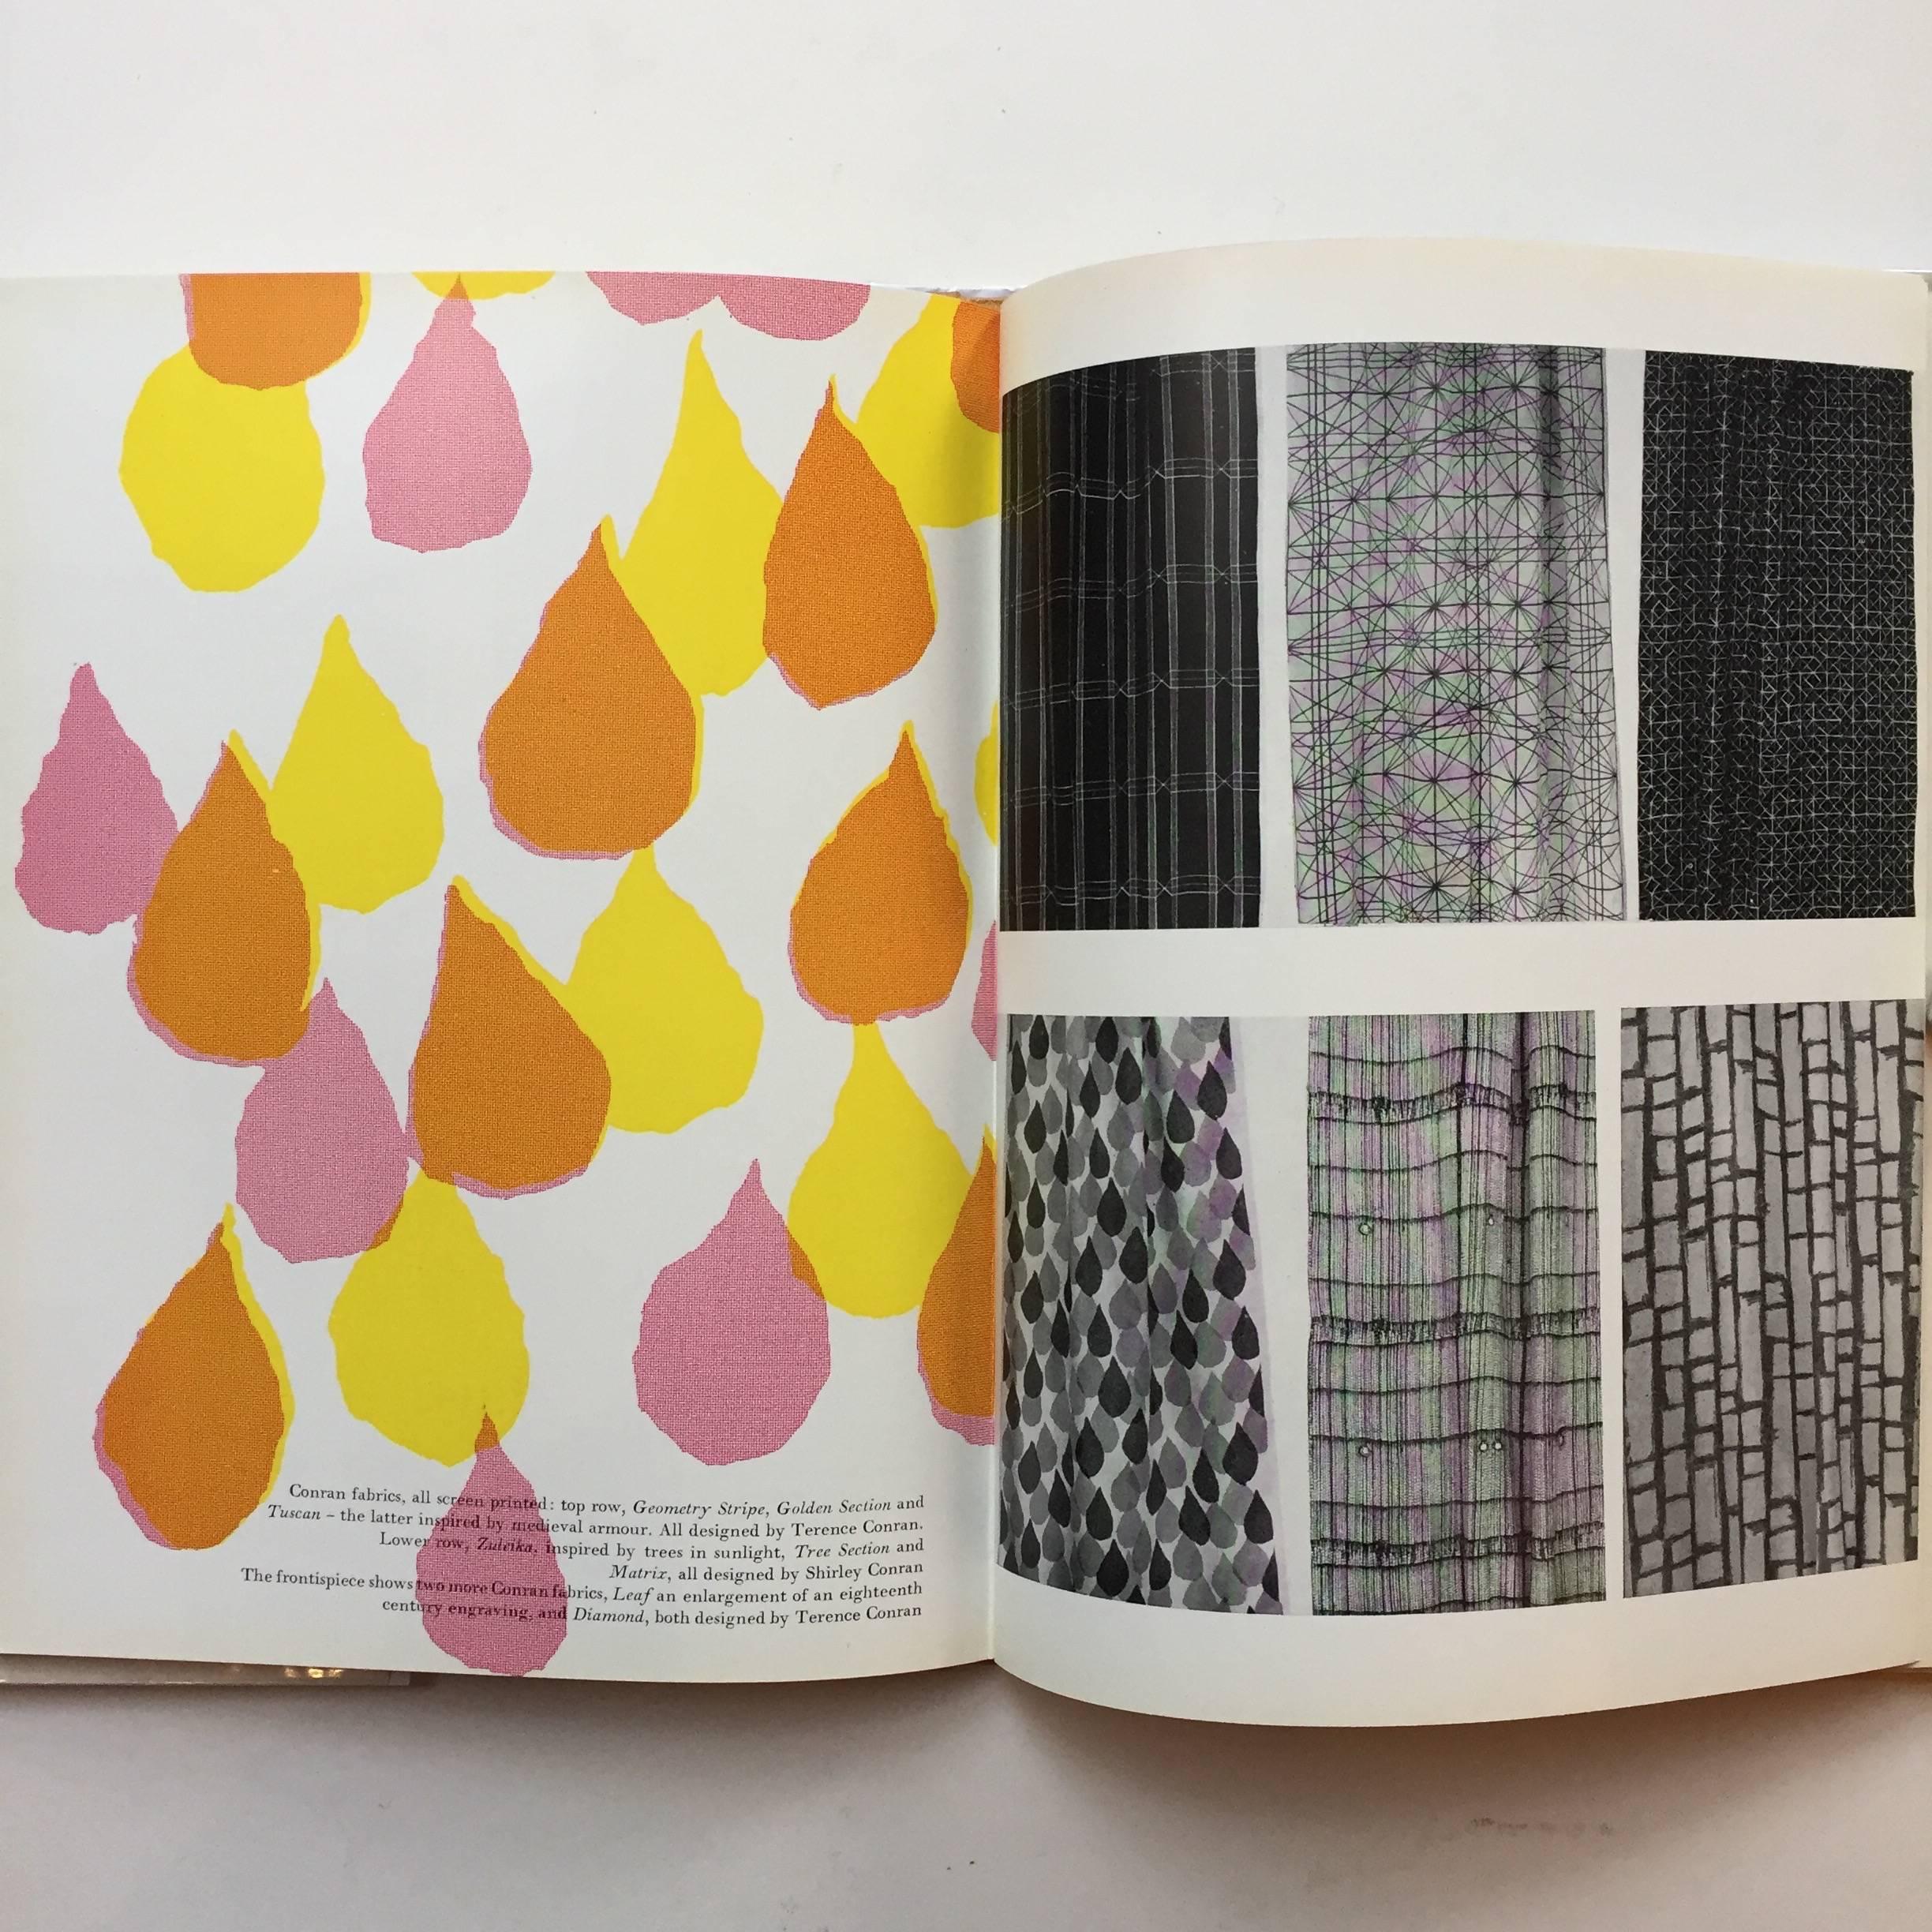 British Terence Conran, Printed Textile Design, 1957